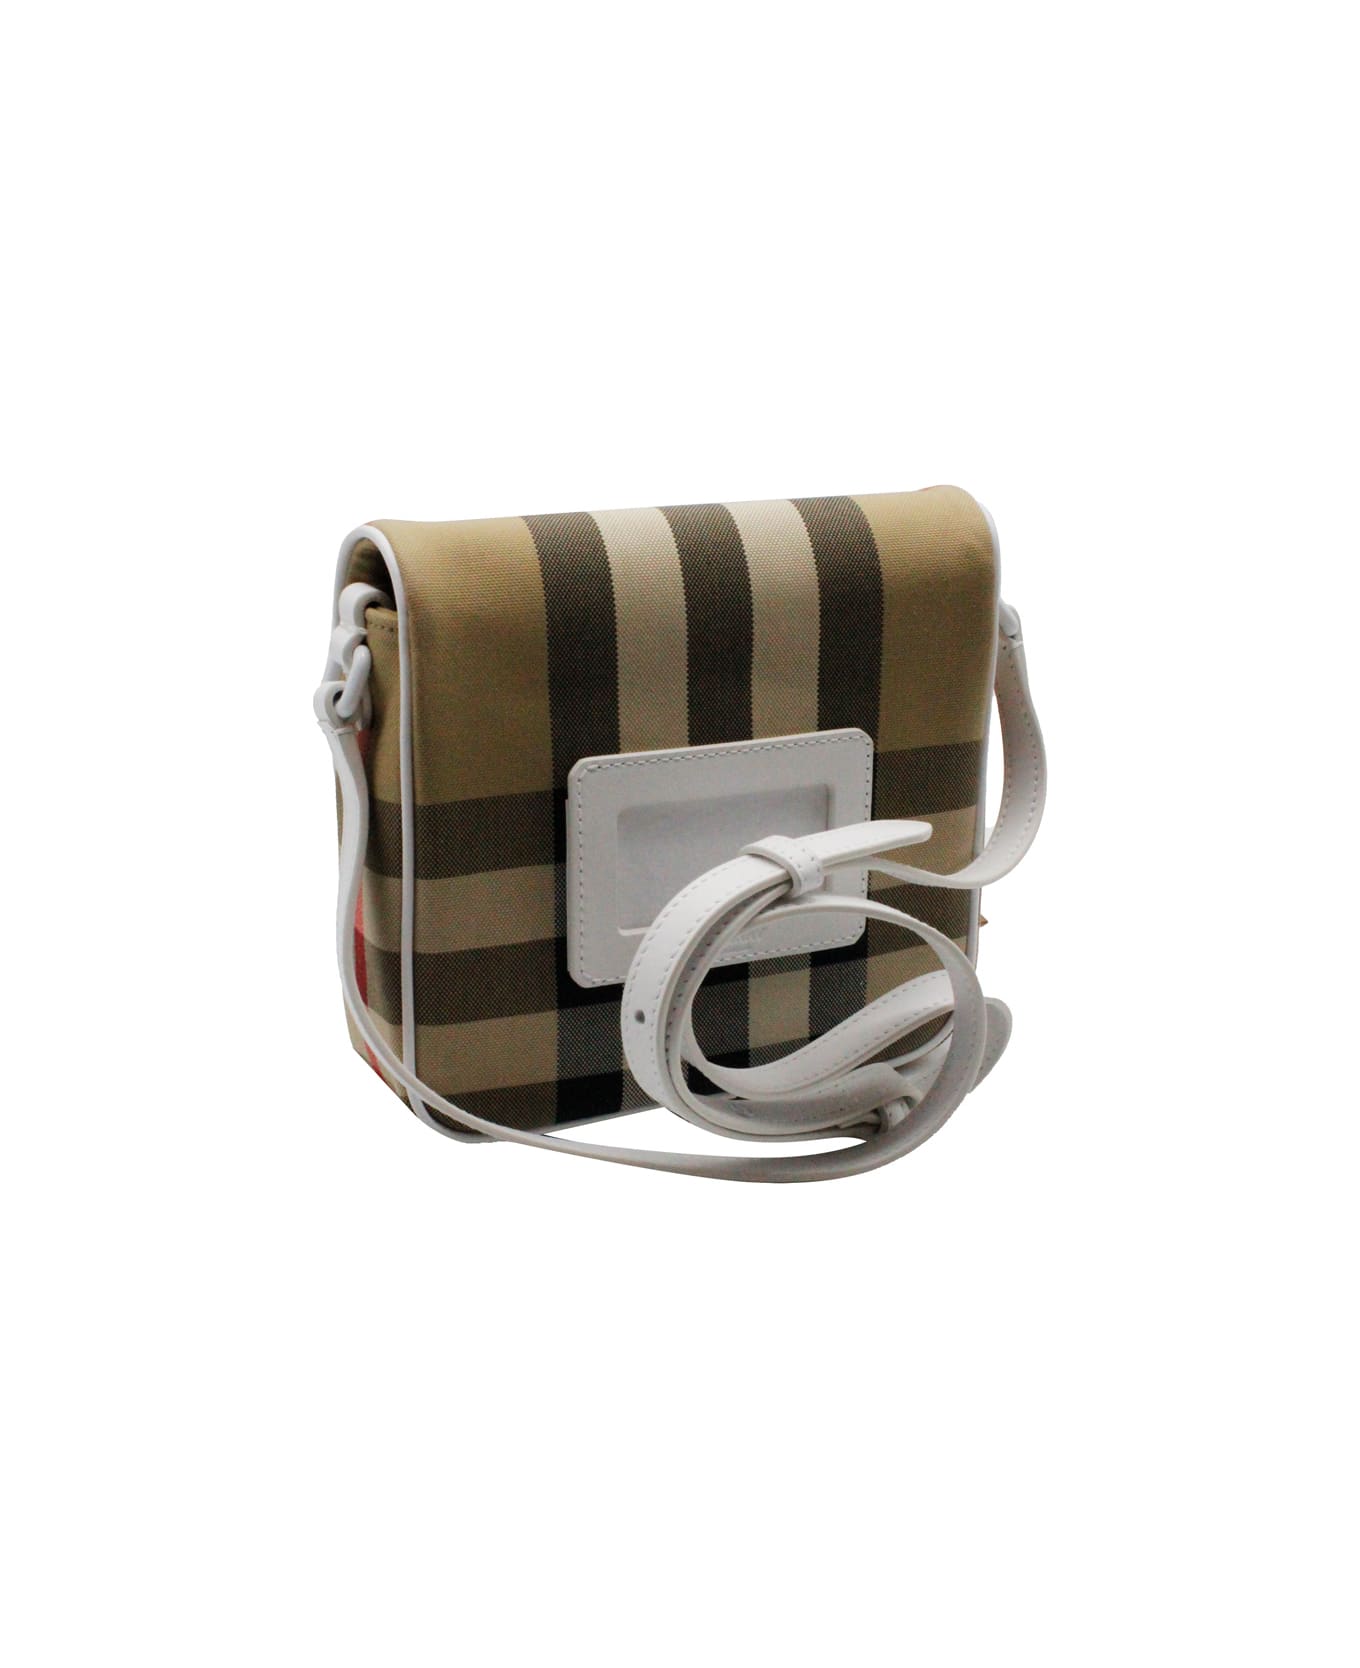 Burberry Fabric Bag With Adjustable Shoulder Strap, - Beige